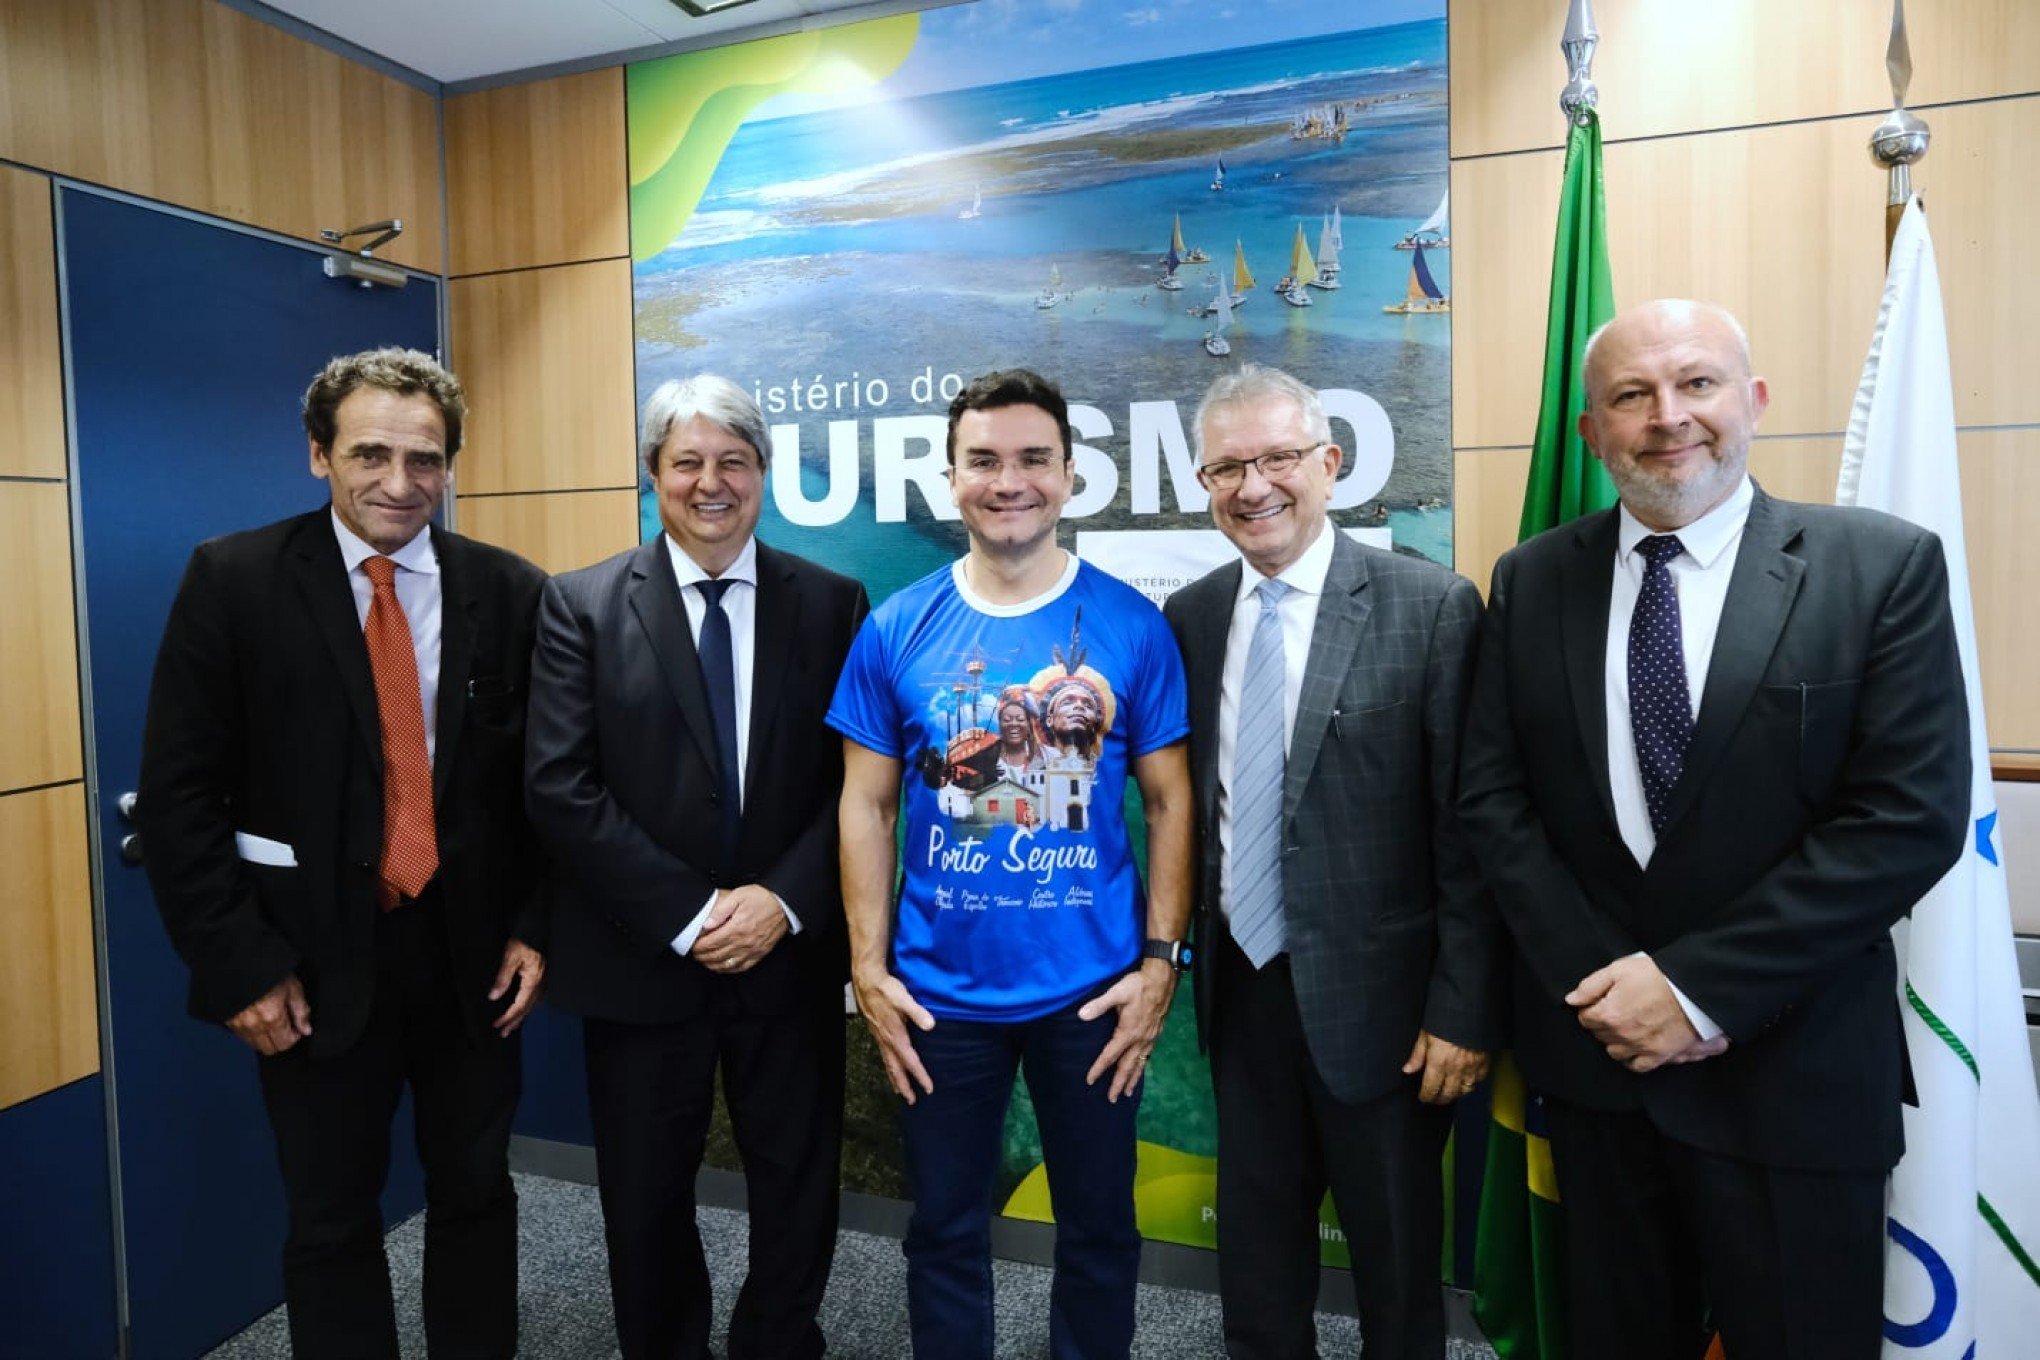 Desfilódromo de Gramado é pauta de prefeito com ministro do Turismo em Brasília